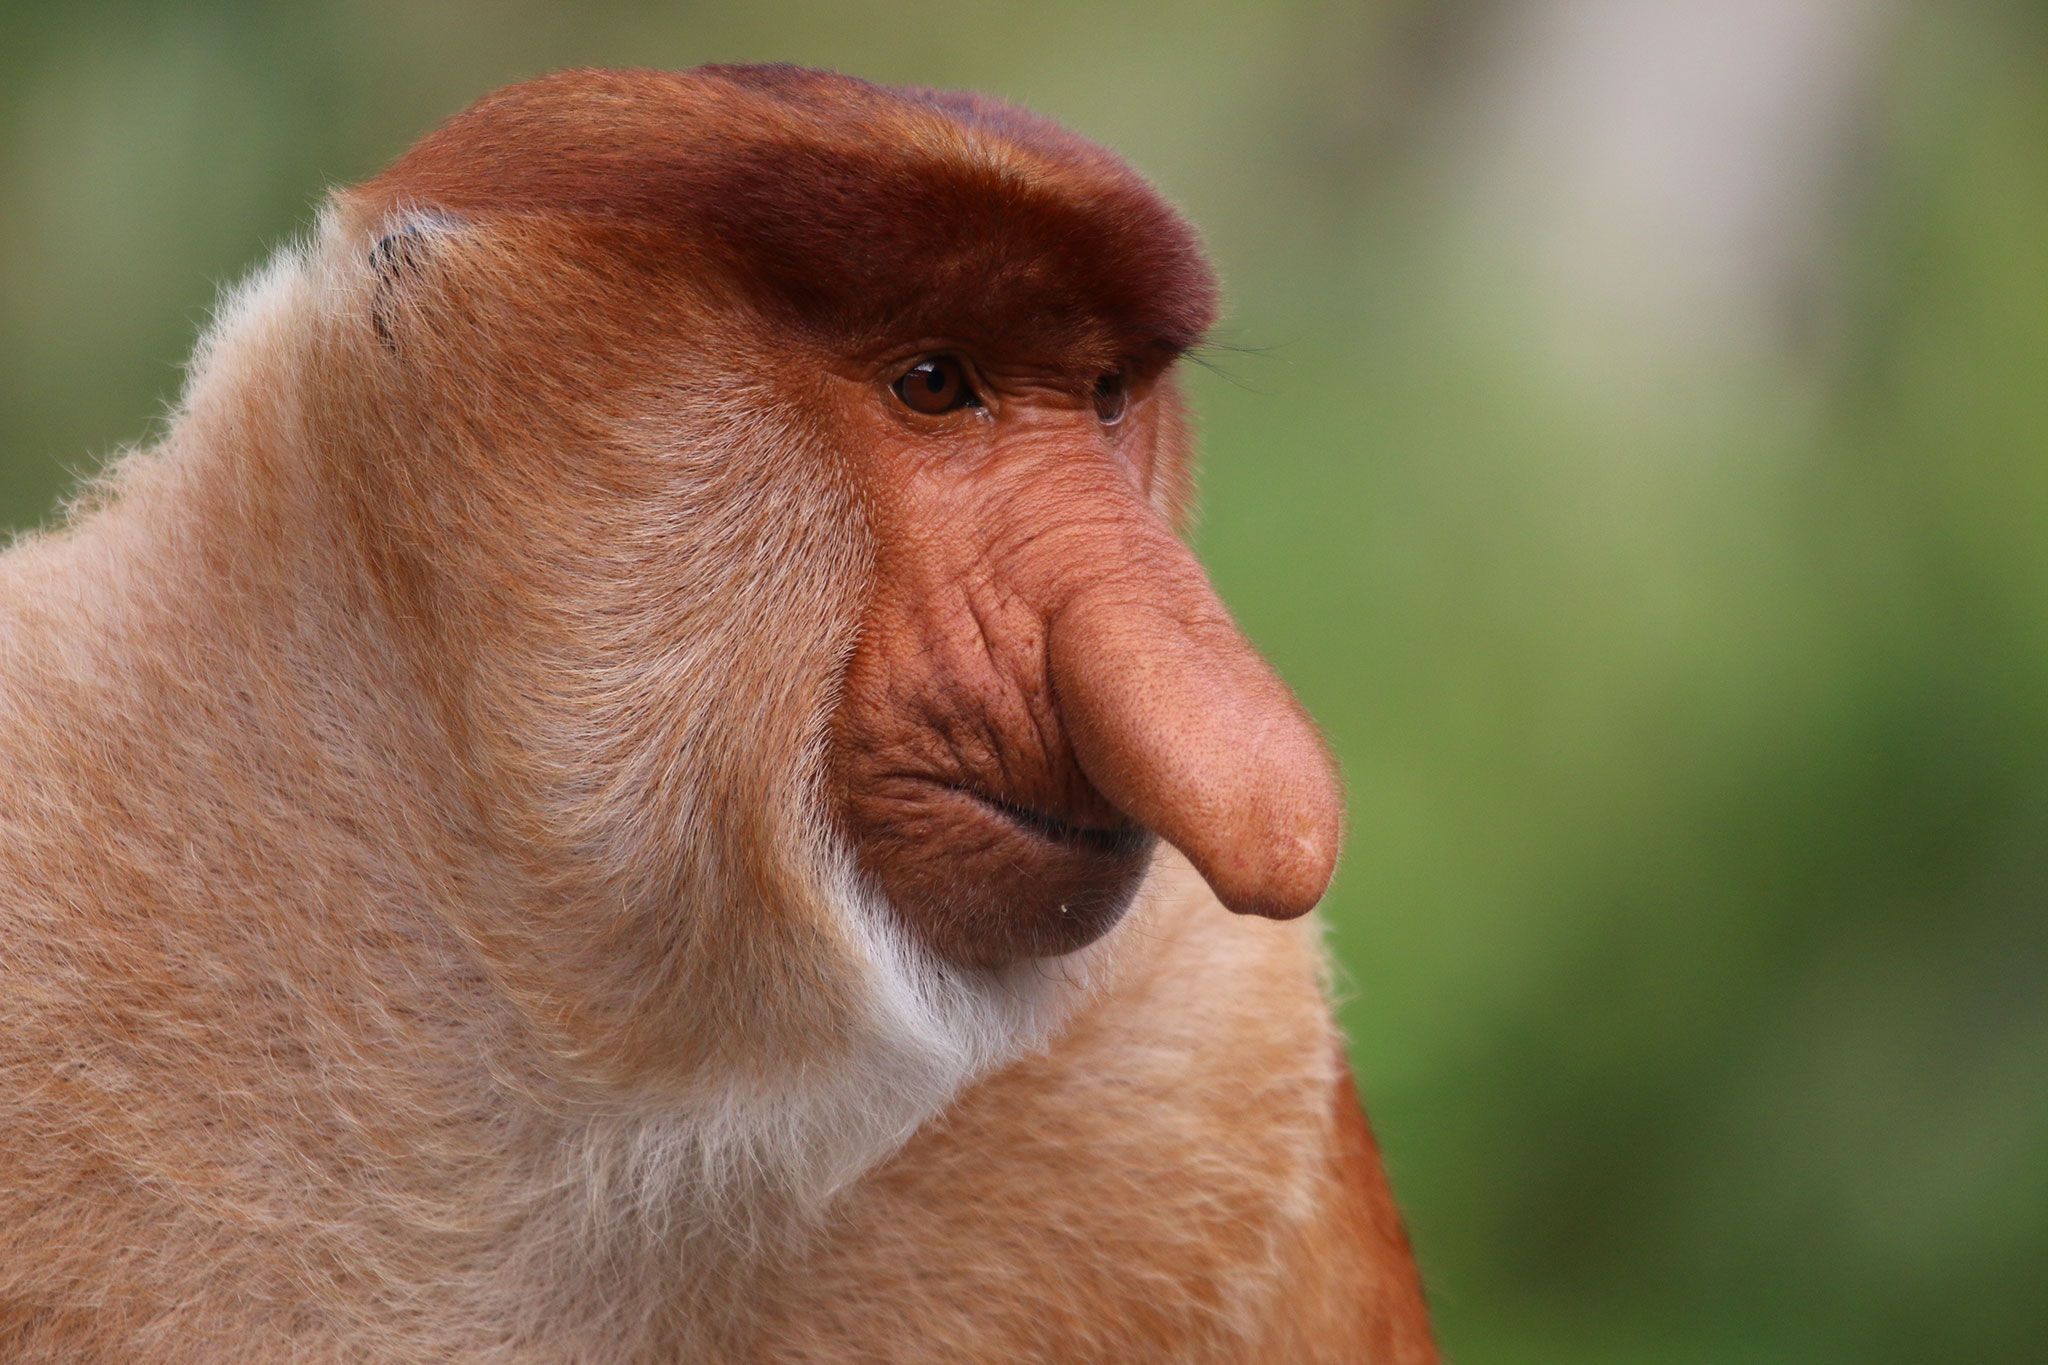 Weglaten output kijken Voor deze aap betekent een grotere neus meer seks